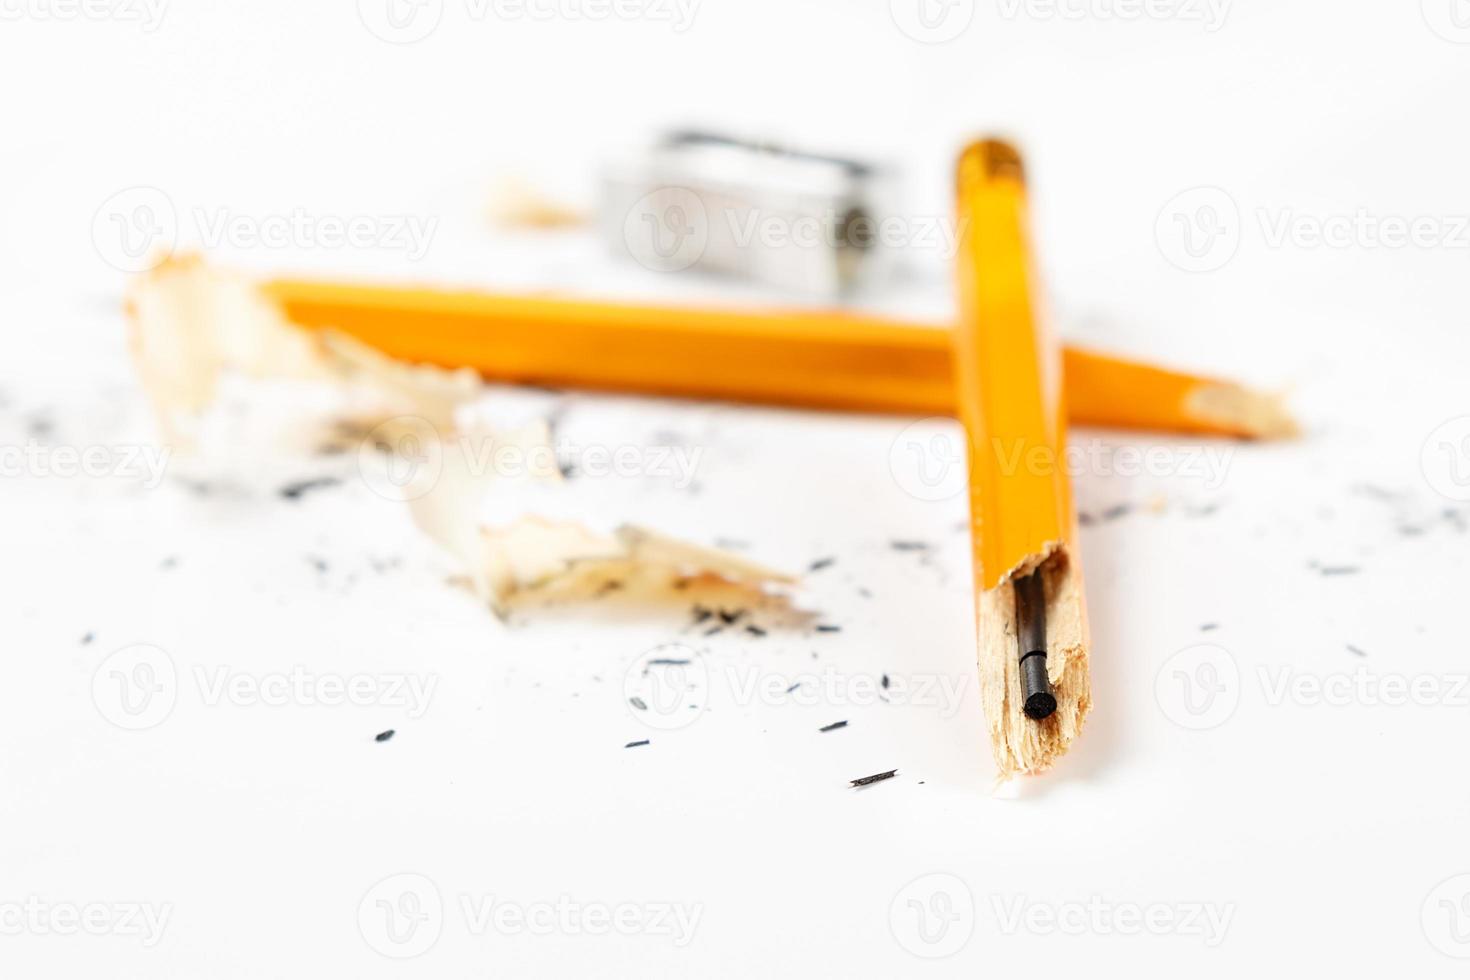 matita, temperamatite in metallo e trucioli di matita su sfondo bianco. immagine orizzontale. foto